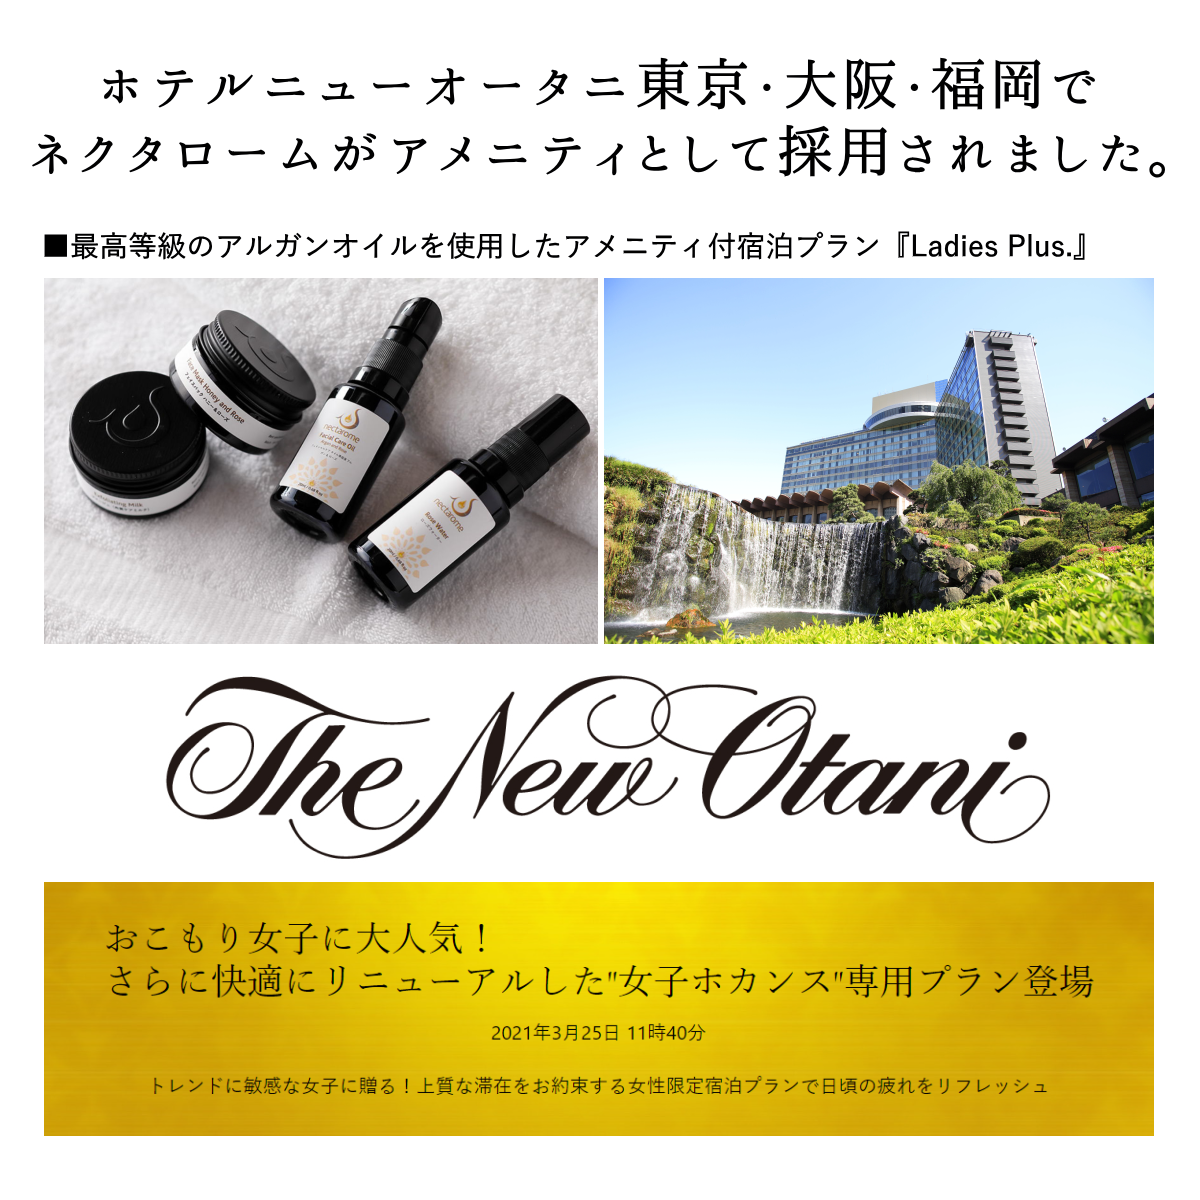 ネクタロームは、ホテルニューオータニ東京のアメニティとして採用されました。